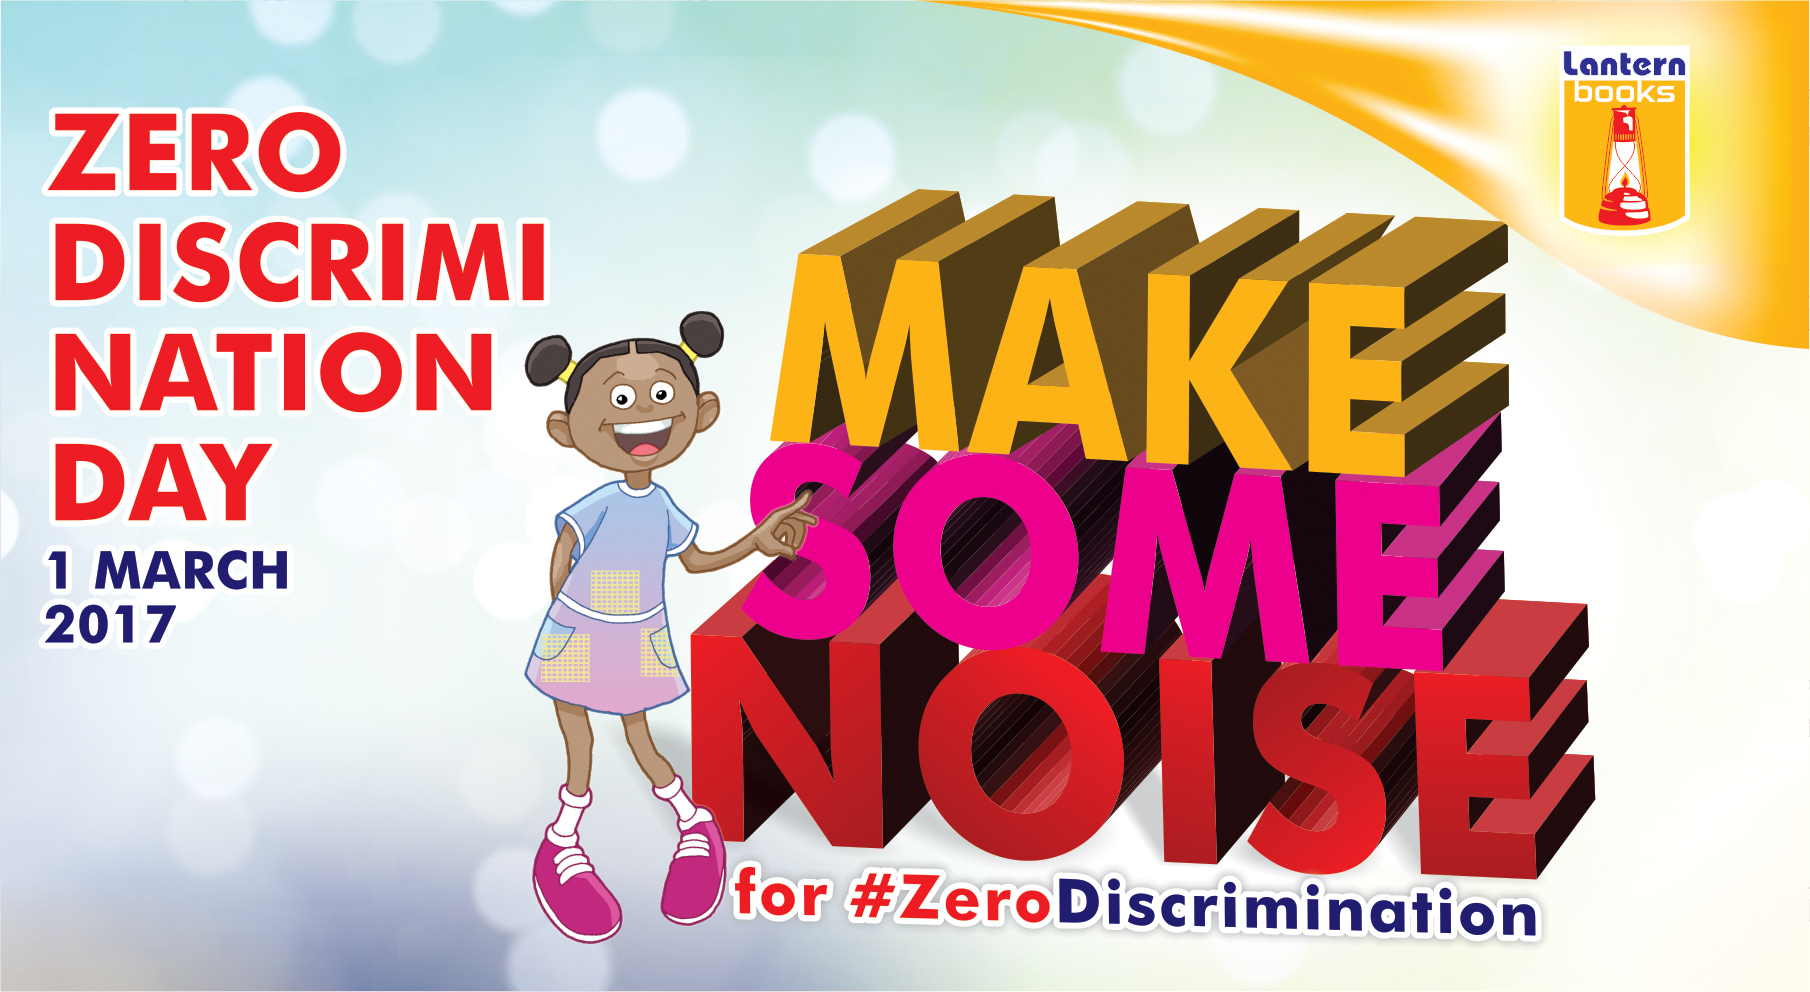 March 1, 2017: Zero Discrimination Day